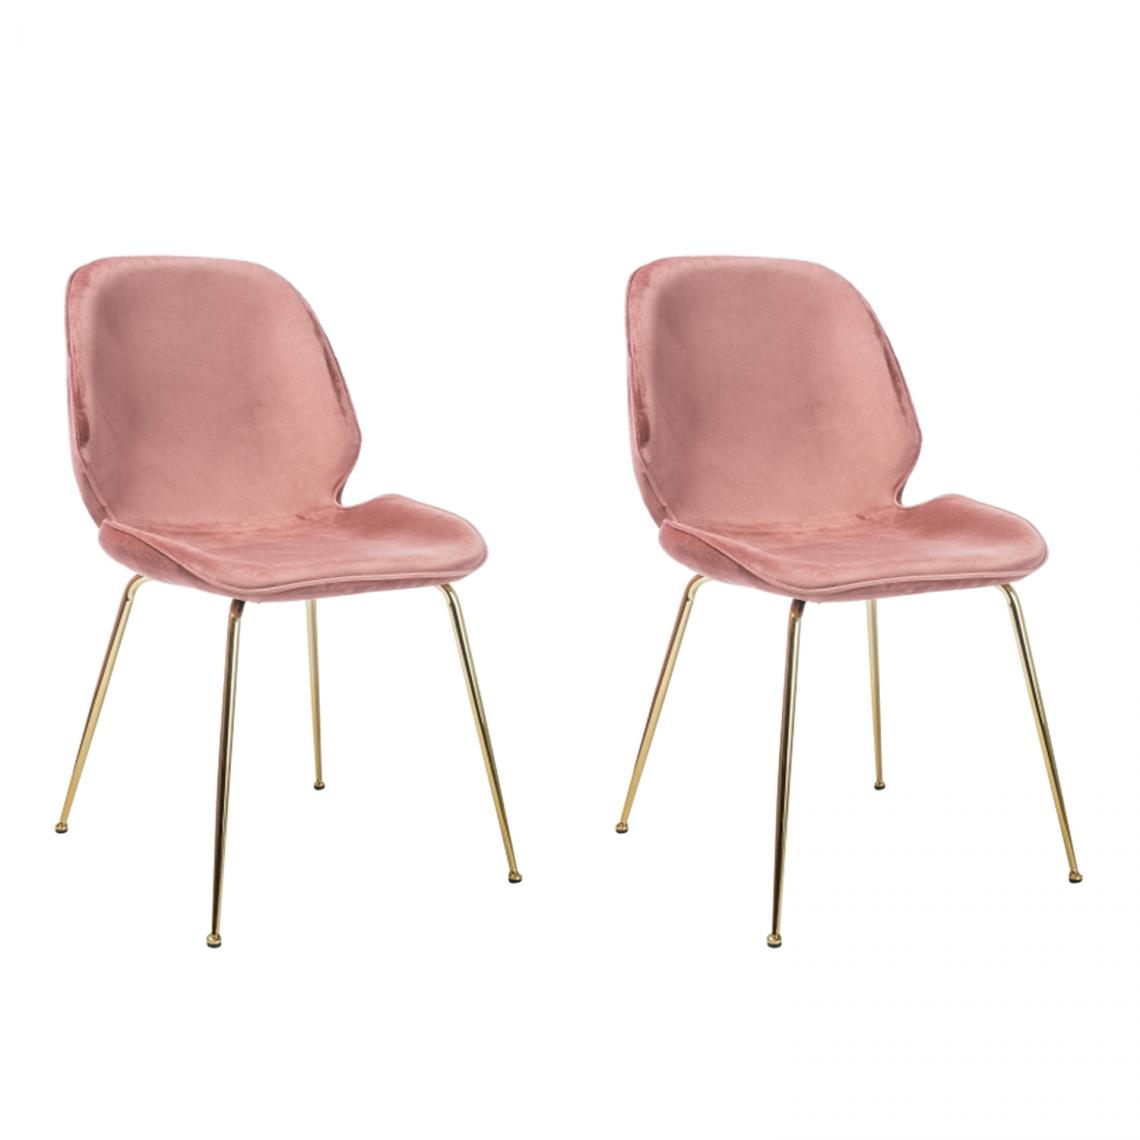 Hucoco - ADRIUN - Lot de 2 chaises style glamour salle à manger - 87x50x42 cm - Tissu velouté - Base en métal - Rose - Chaises